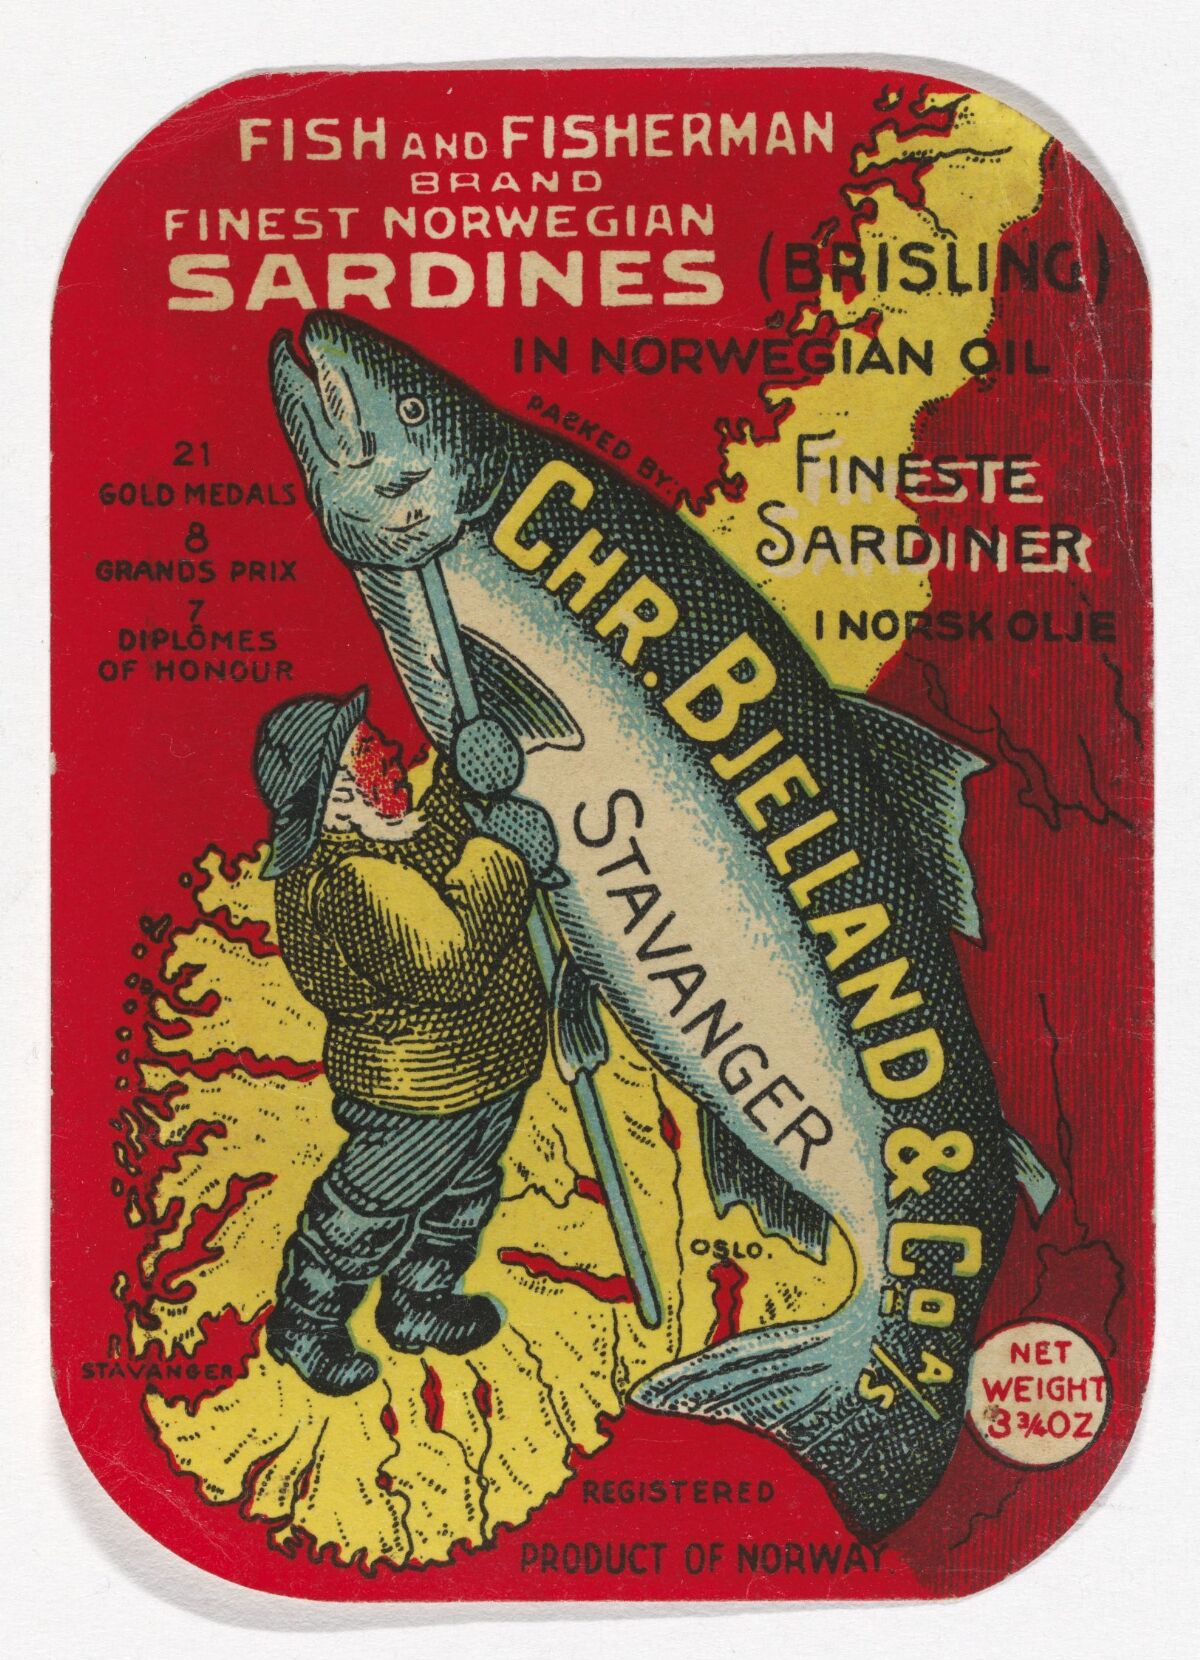 Chr. Bjelland & Co., Finest Norwegian Sardines – Nasjonalmuseet